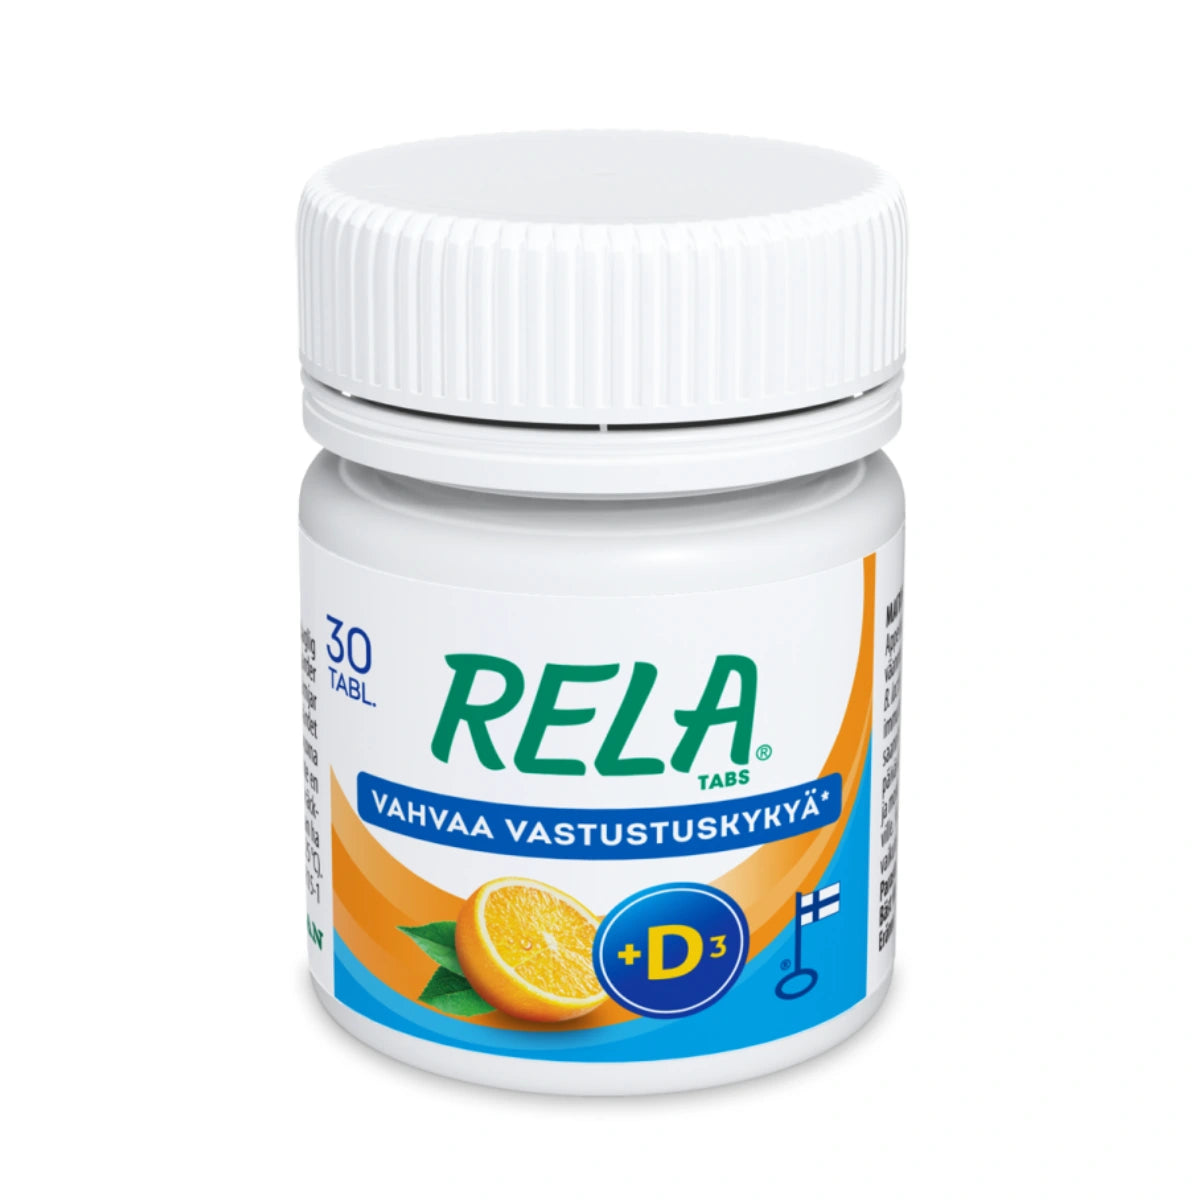 RELA Tabs Appelsiini + D3 tabletti 30 kpl maistuu pirskahtelevalle appelsiinille